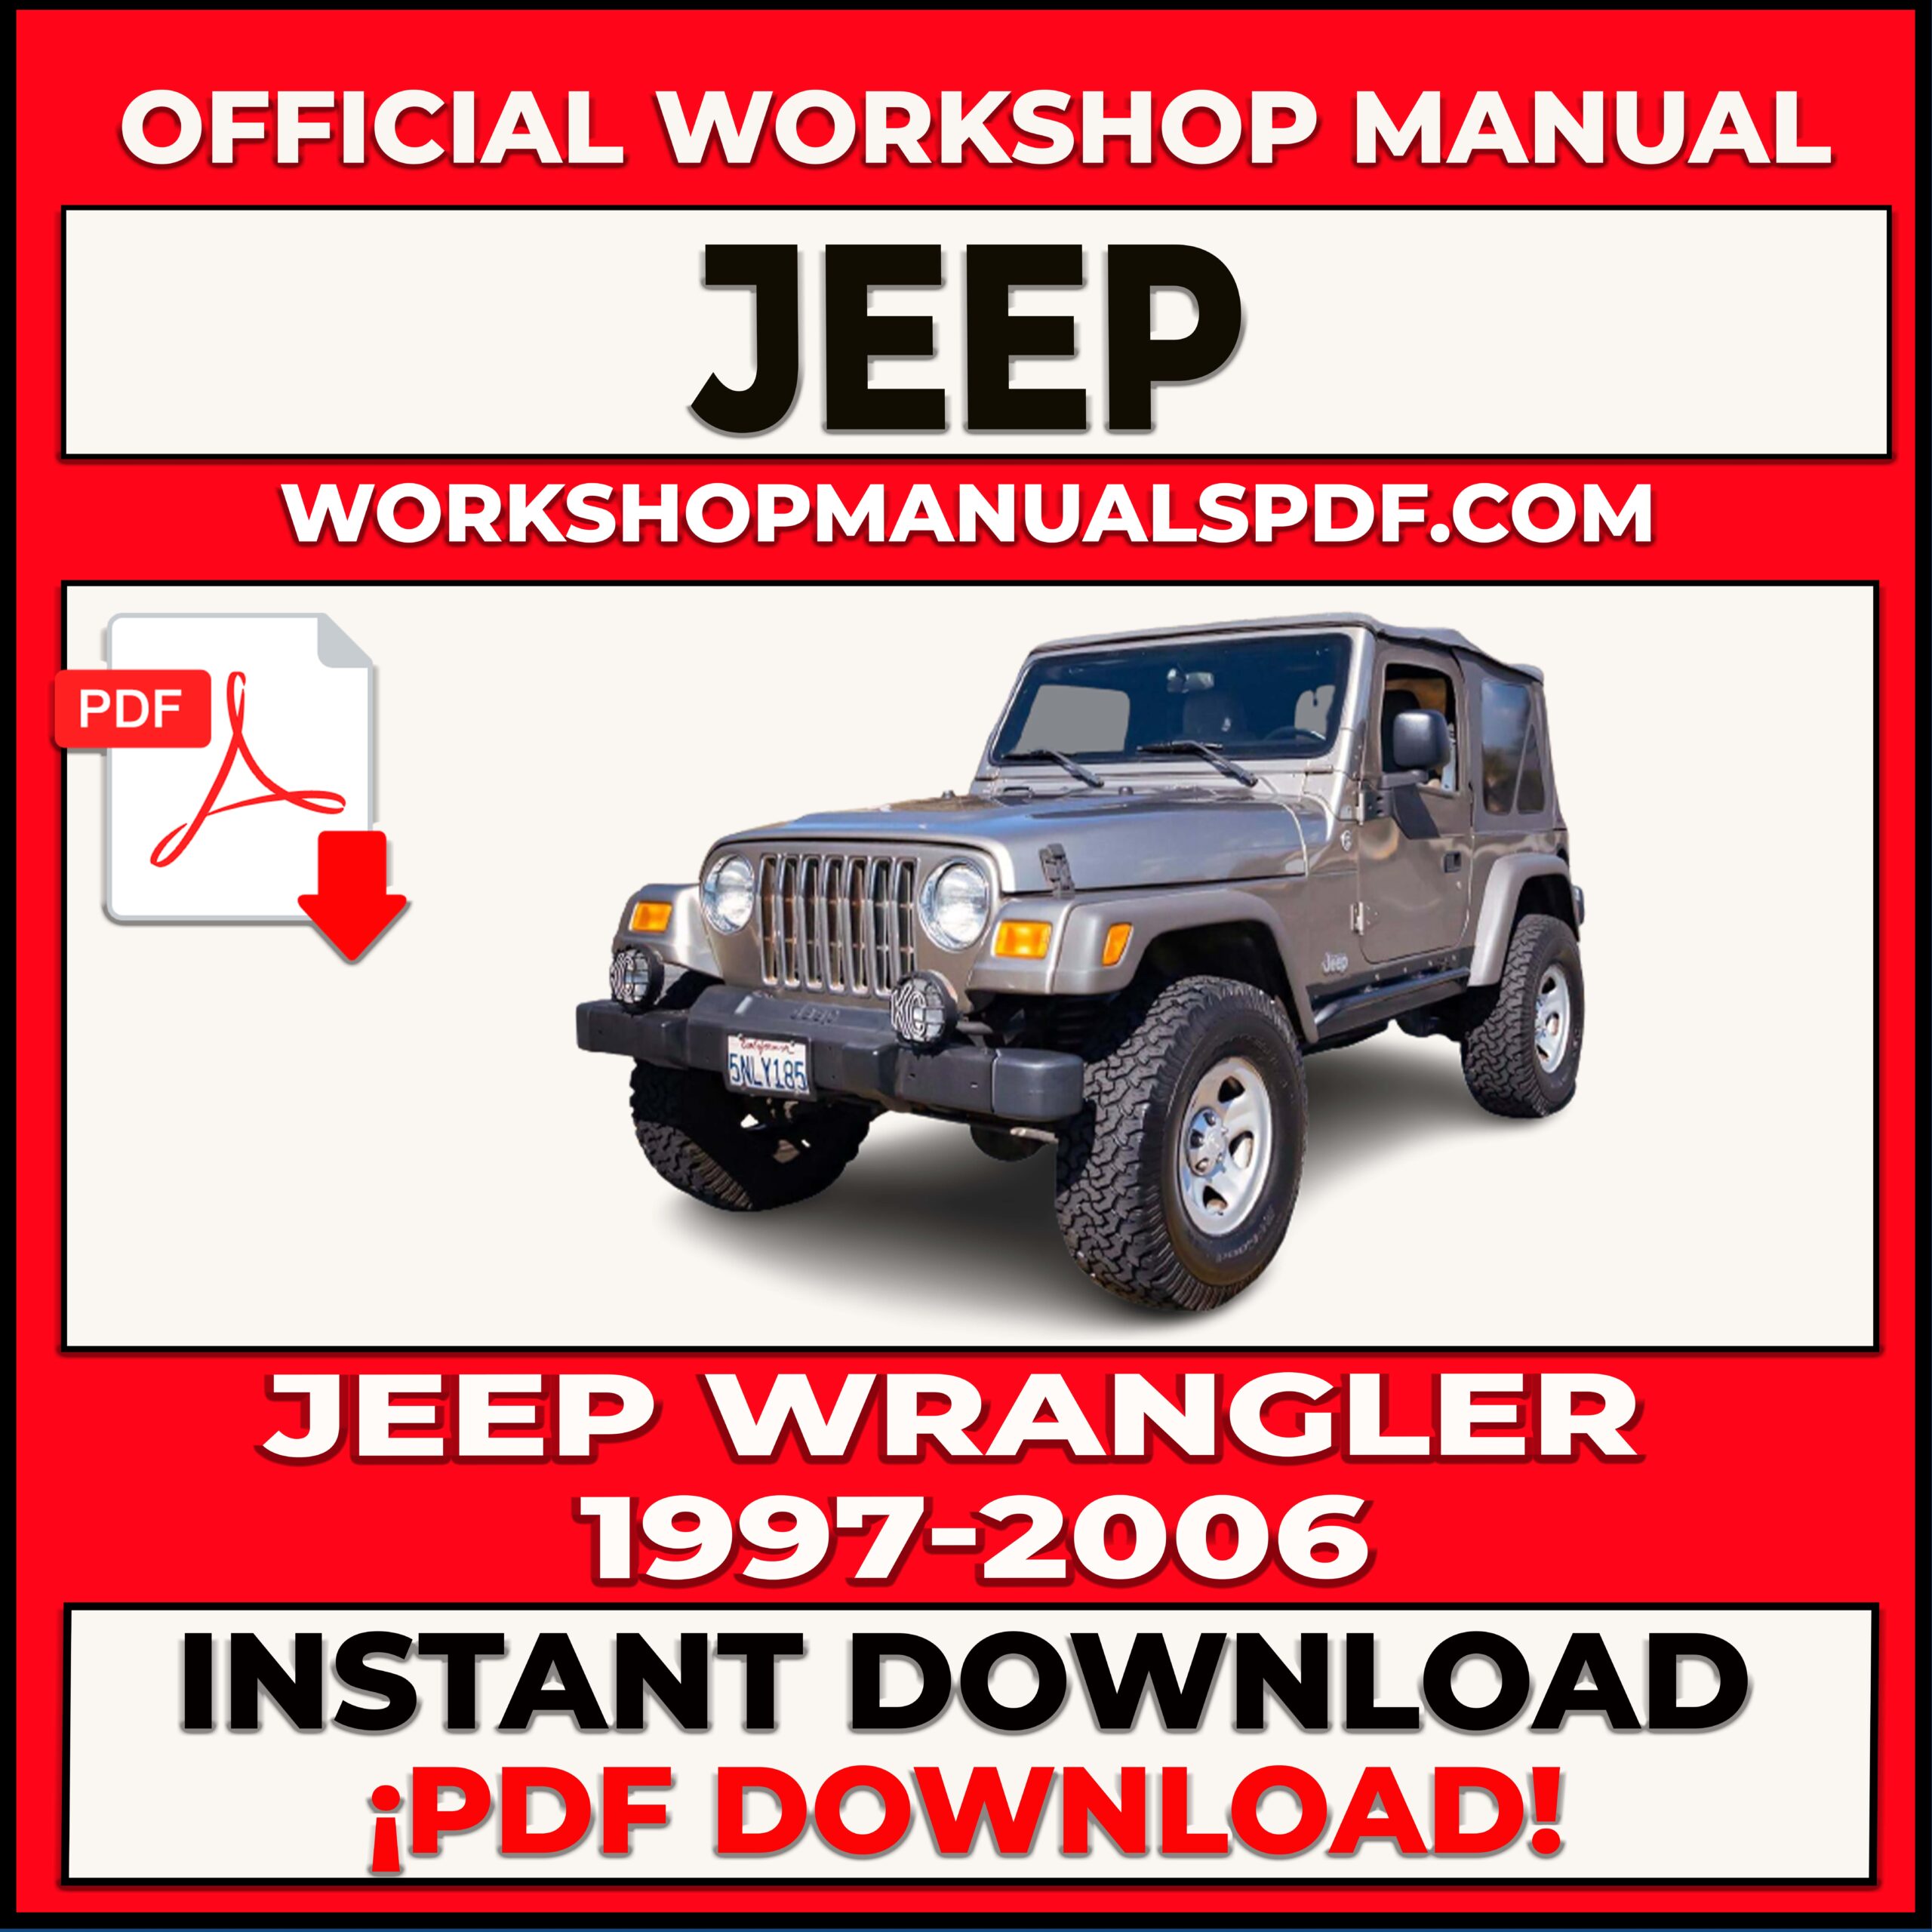 Jeep Wrangler 1997-2006 Workshop Manual